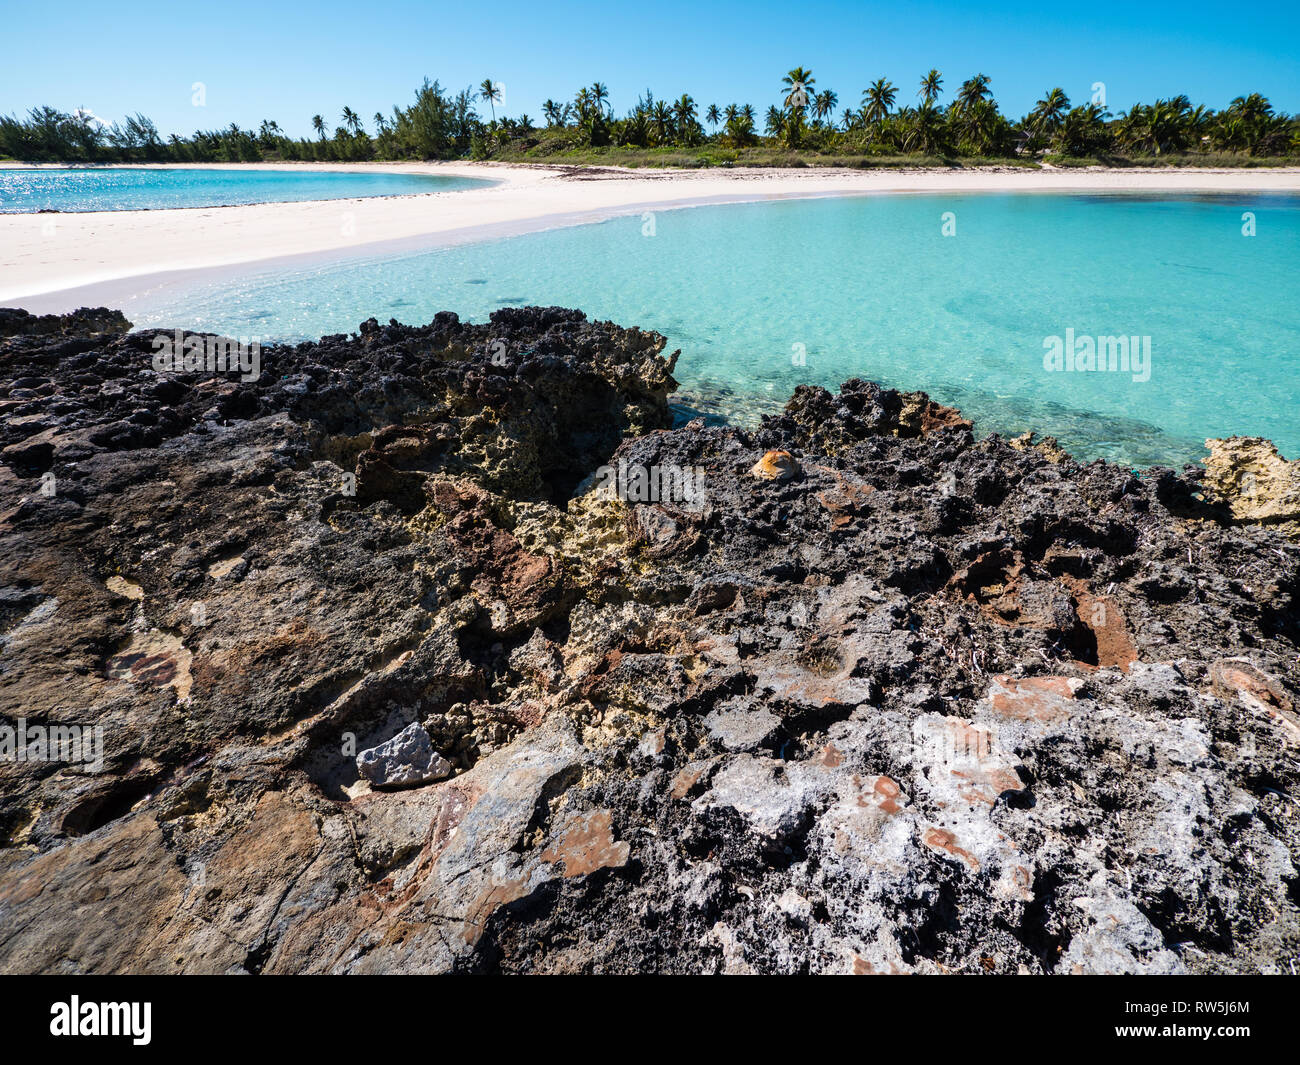 En la Isla de Coral Tropical Playa calas gemelas, Gobernadores Harbour Eleuthera Island, Las Bahamas, El Caribe. Foto de stock